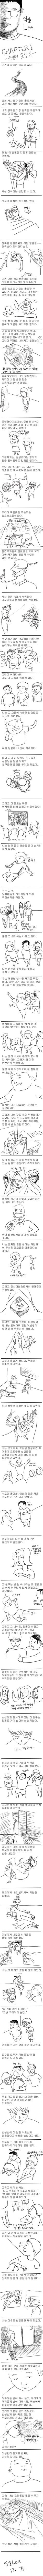 카연갤) 억울 Lee - 1부 유소년의 못생김 -.jpg